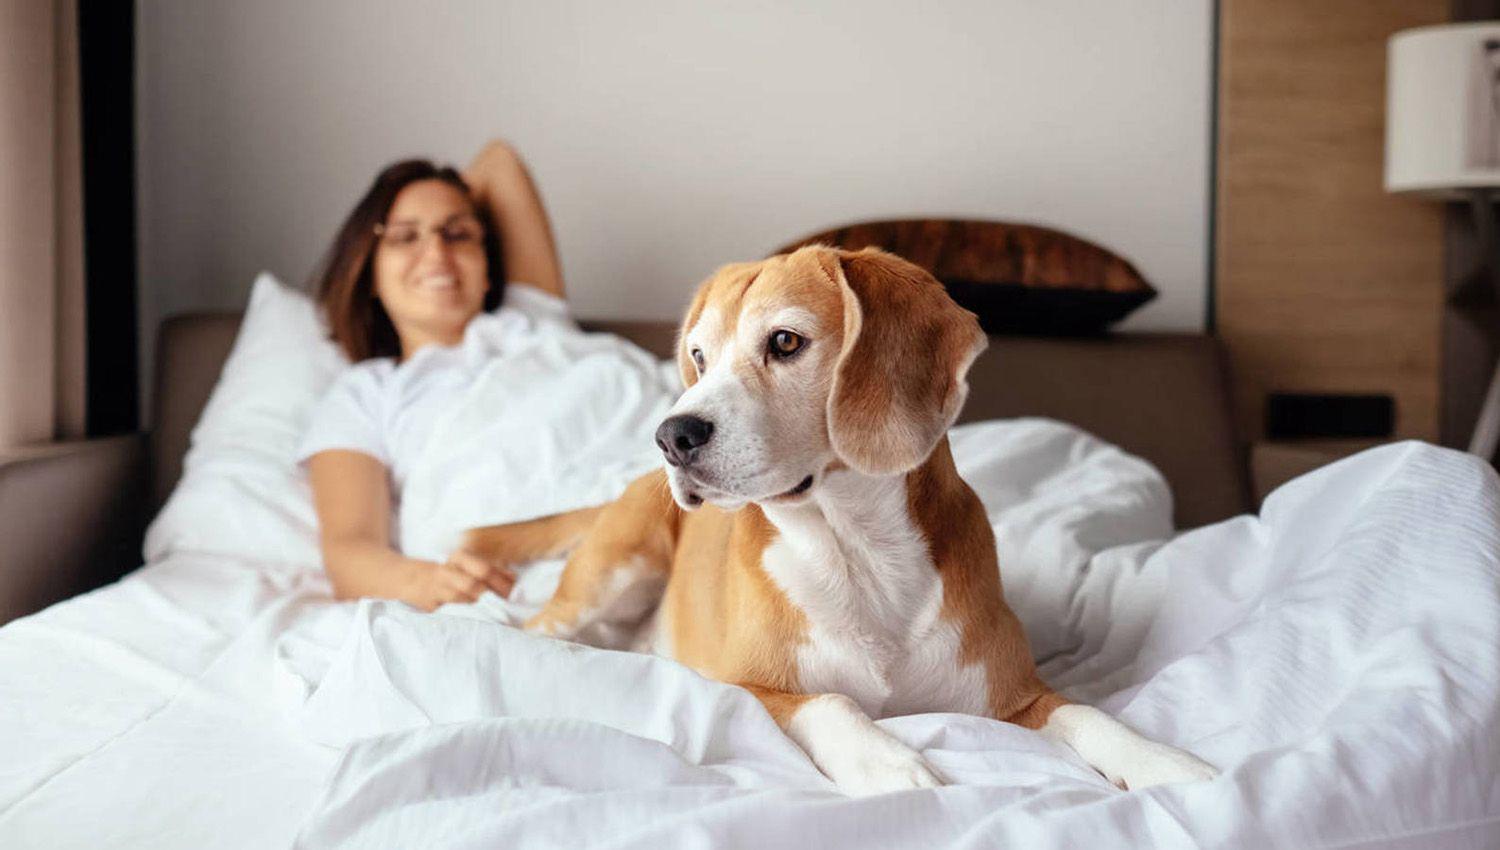 Compartir la cama con perros puede ser peligroso